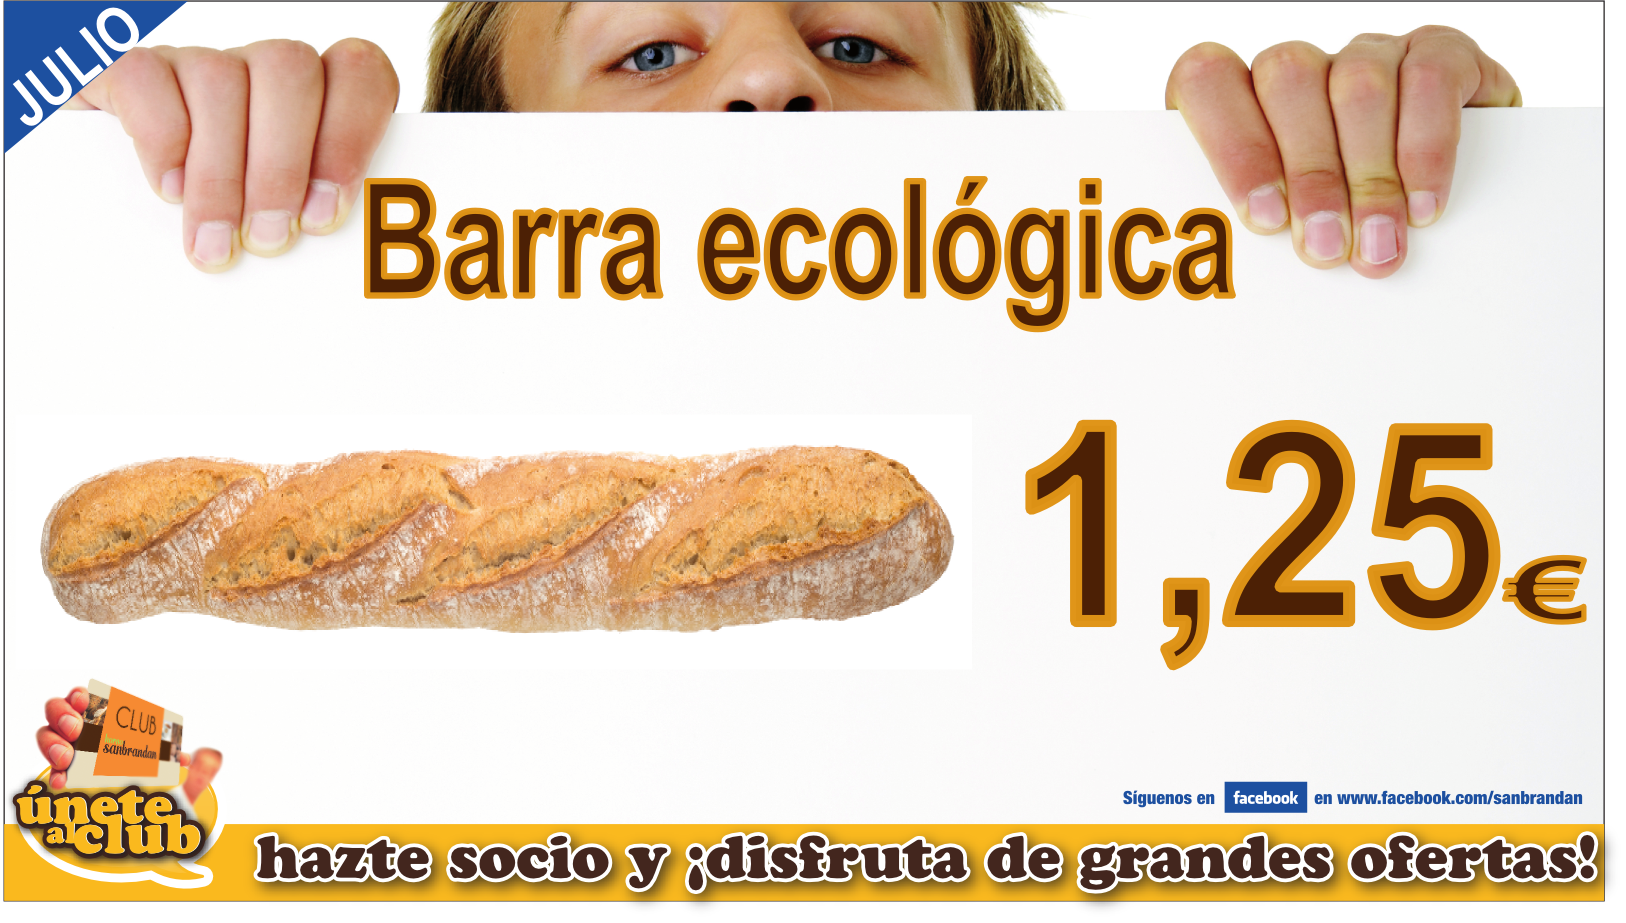 Barra ecológica por 1,25 €